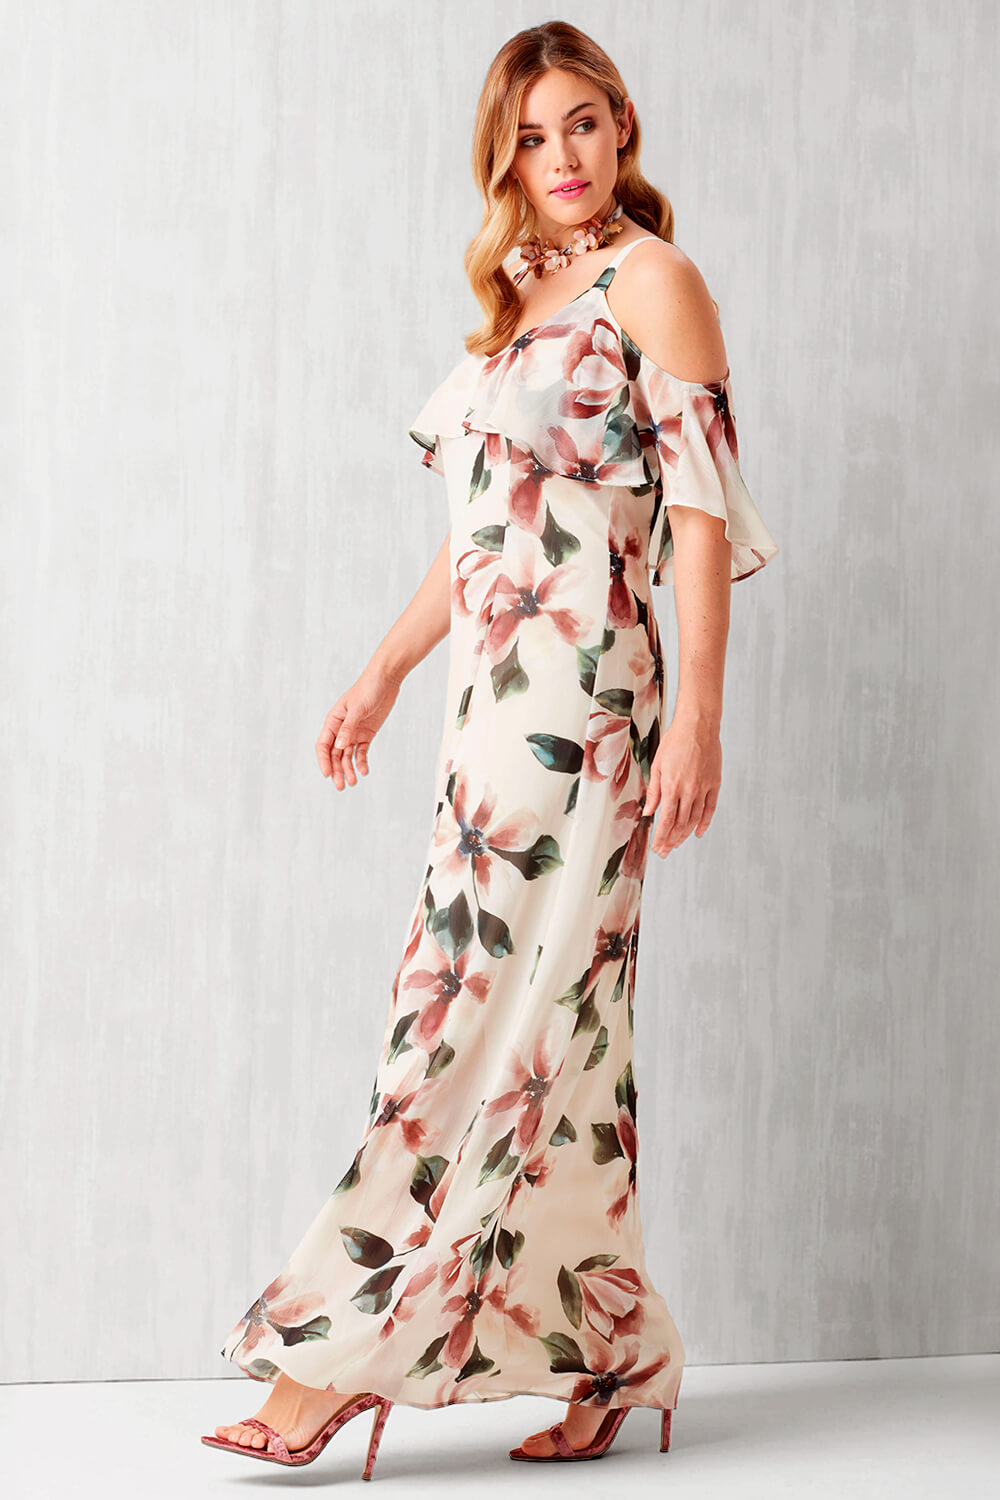 AmyDong Women Summer Cold Shoulder Floral Print Elegant Maxi Long Dress Pocket Dress 